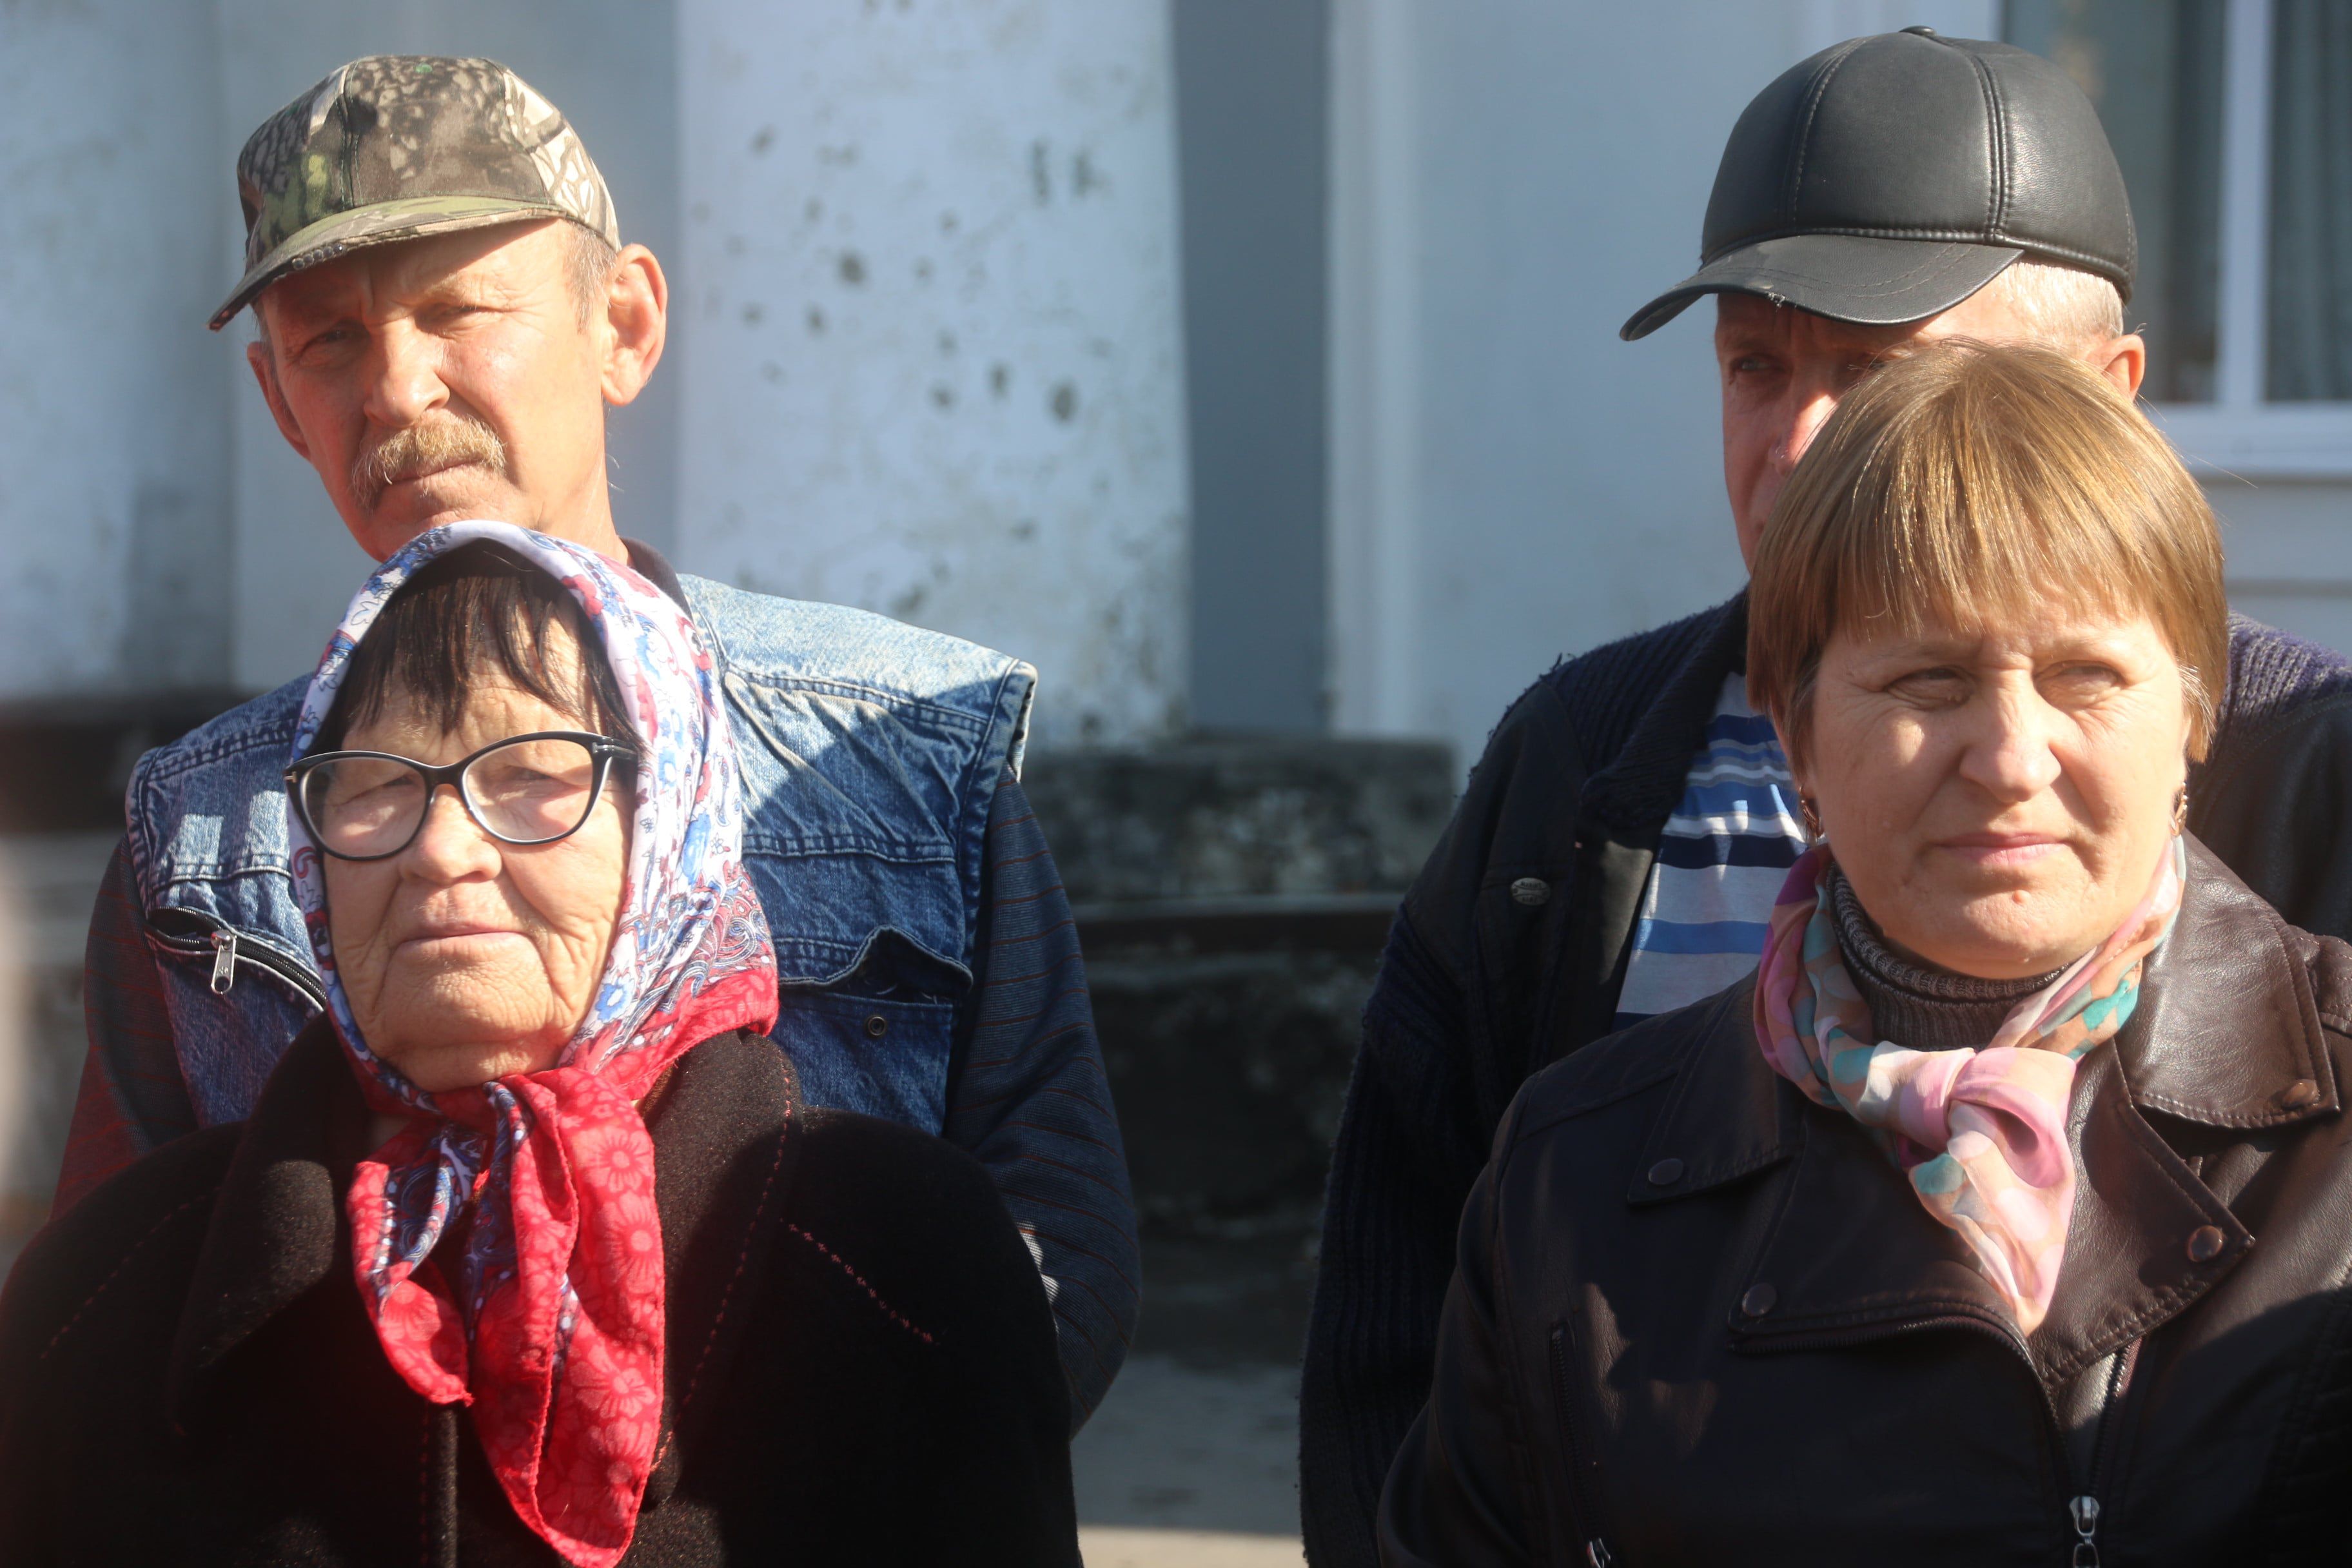 Участники пикета в Гуково 12 октября 2019 года. Фото Вячеслава Прудникова для "Кавказского узла"